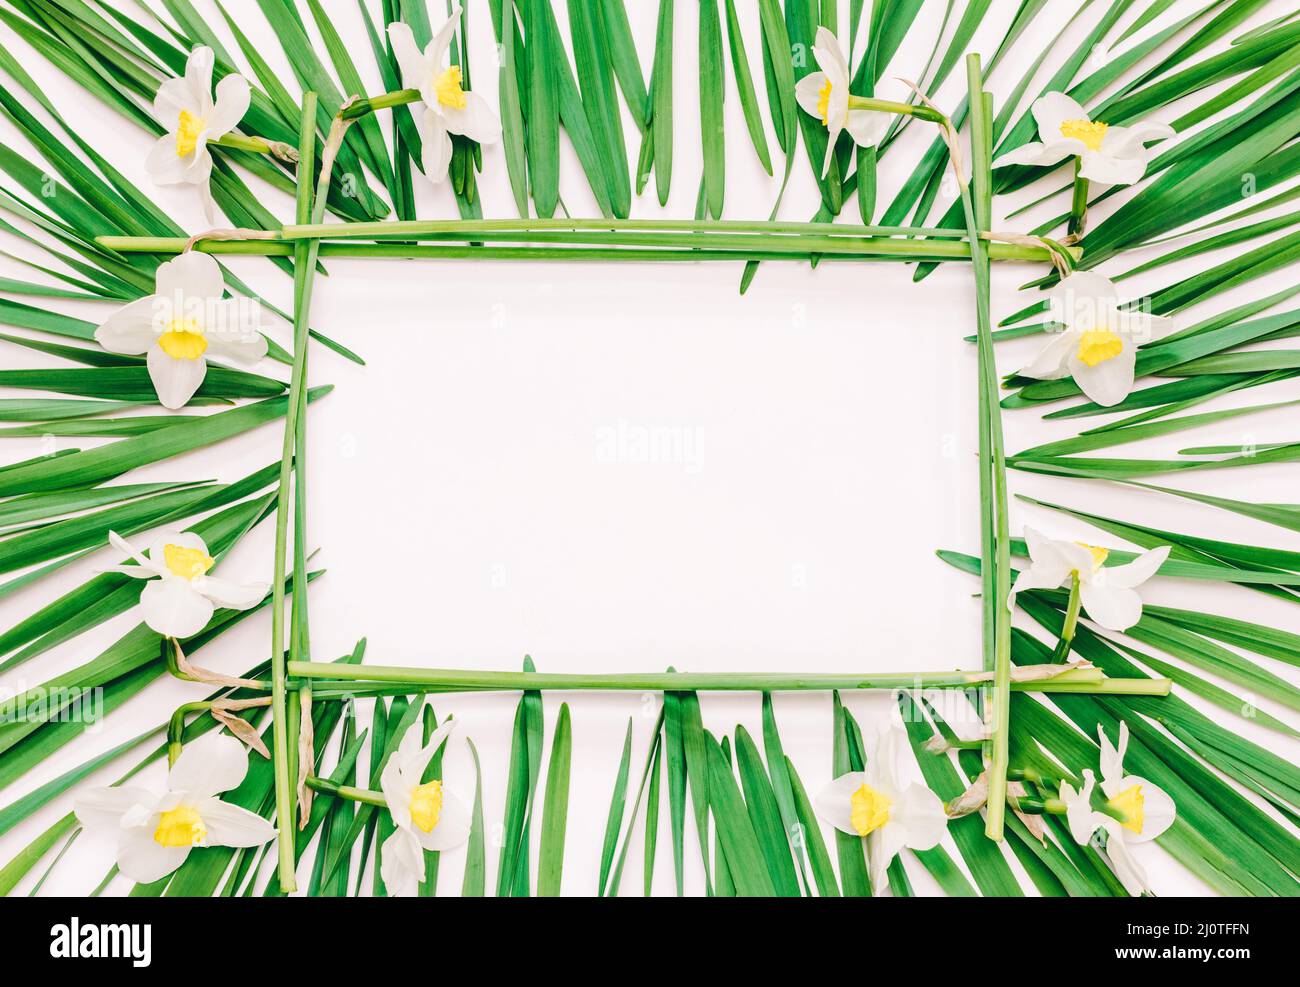 Bastidor rectangular floral de flores amarillas de narcisos y hojas verdes sobre fondo blanco con espacio para texto, vista superior Foto de stock